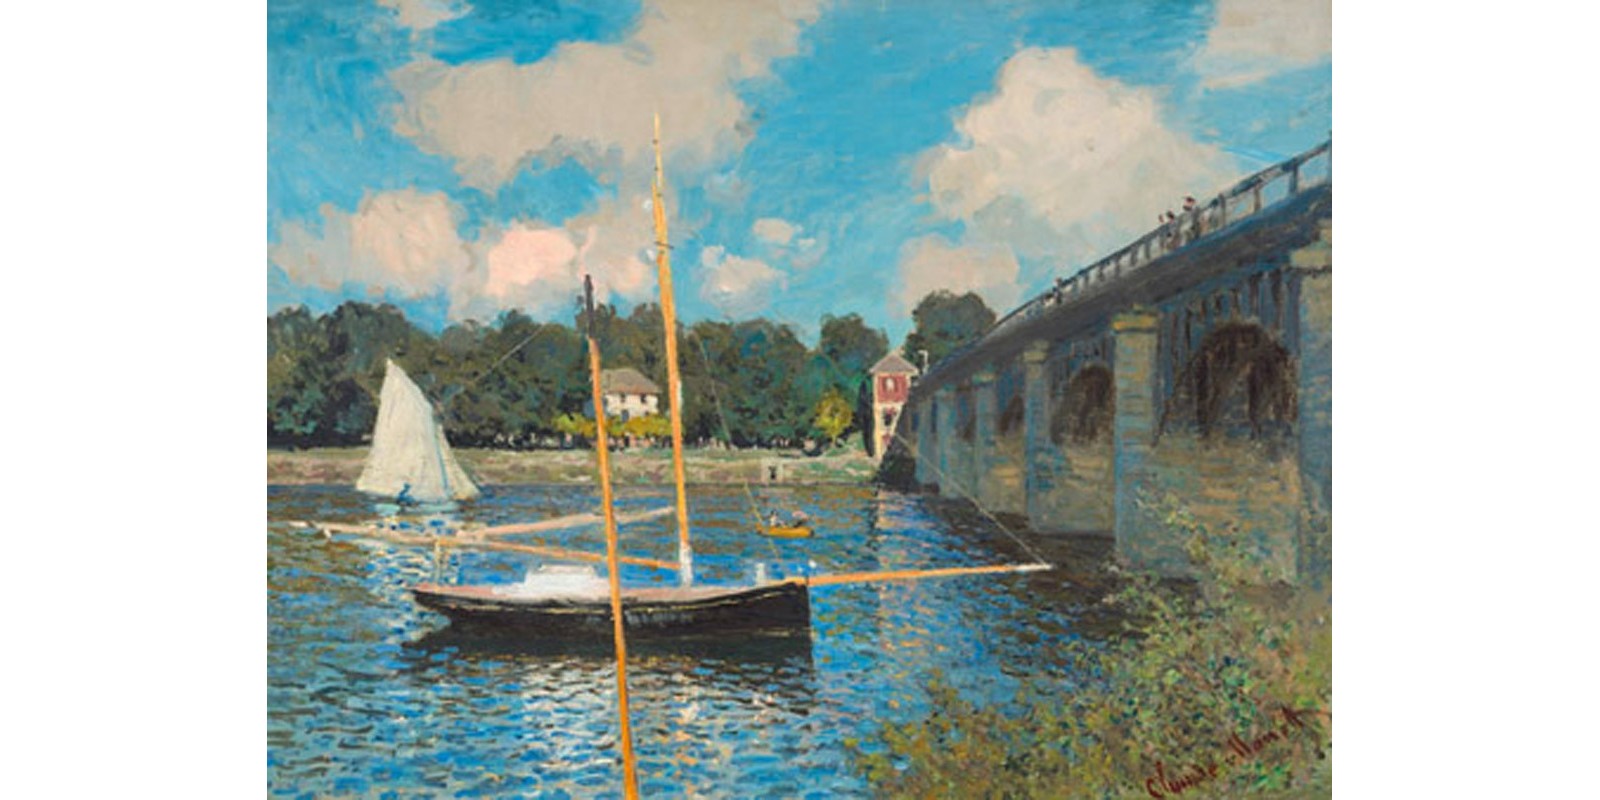 Claude Monet - The bridge at Argenteuil